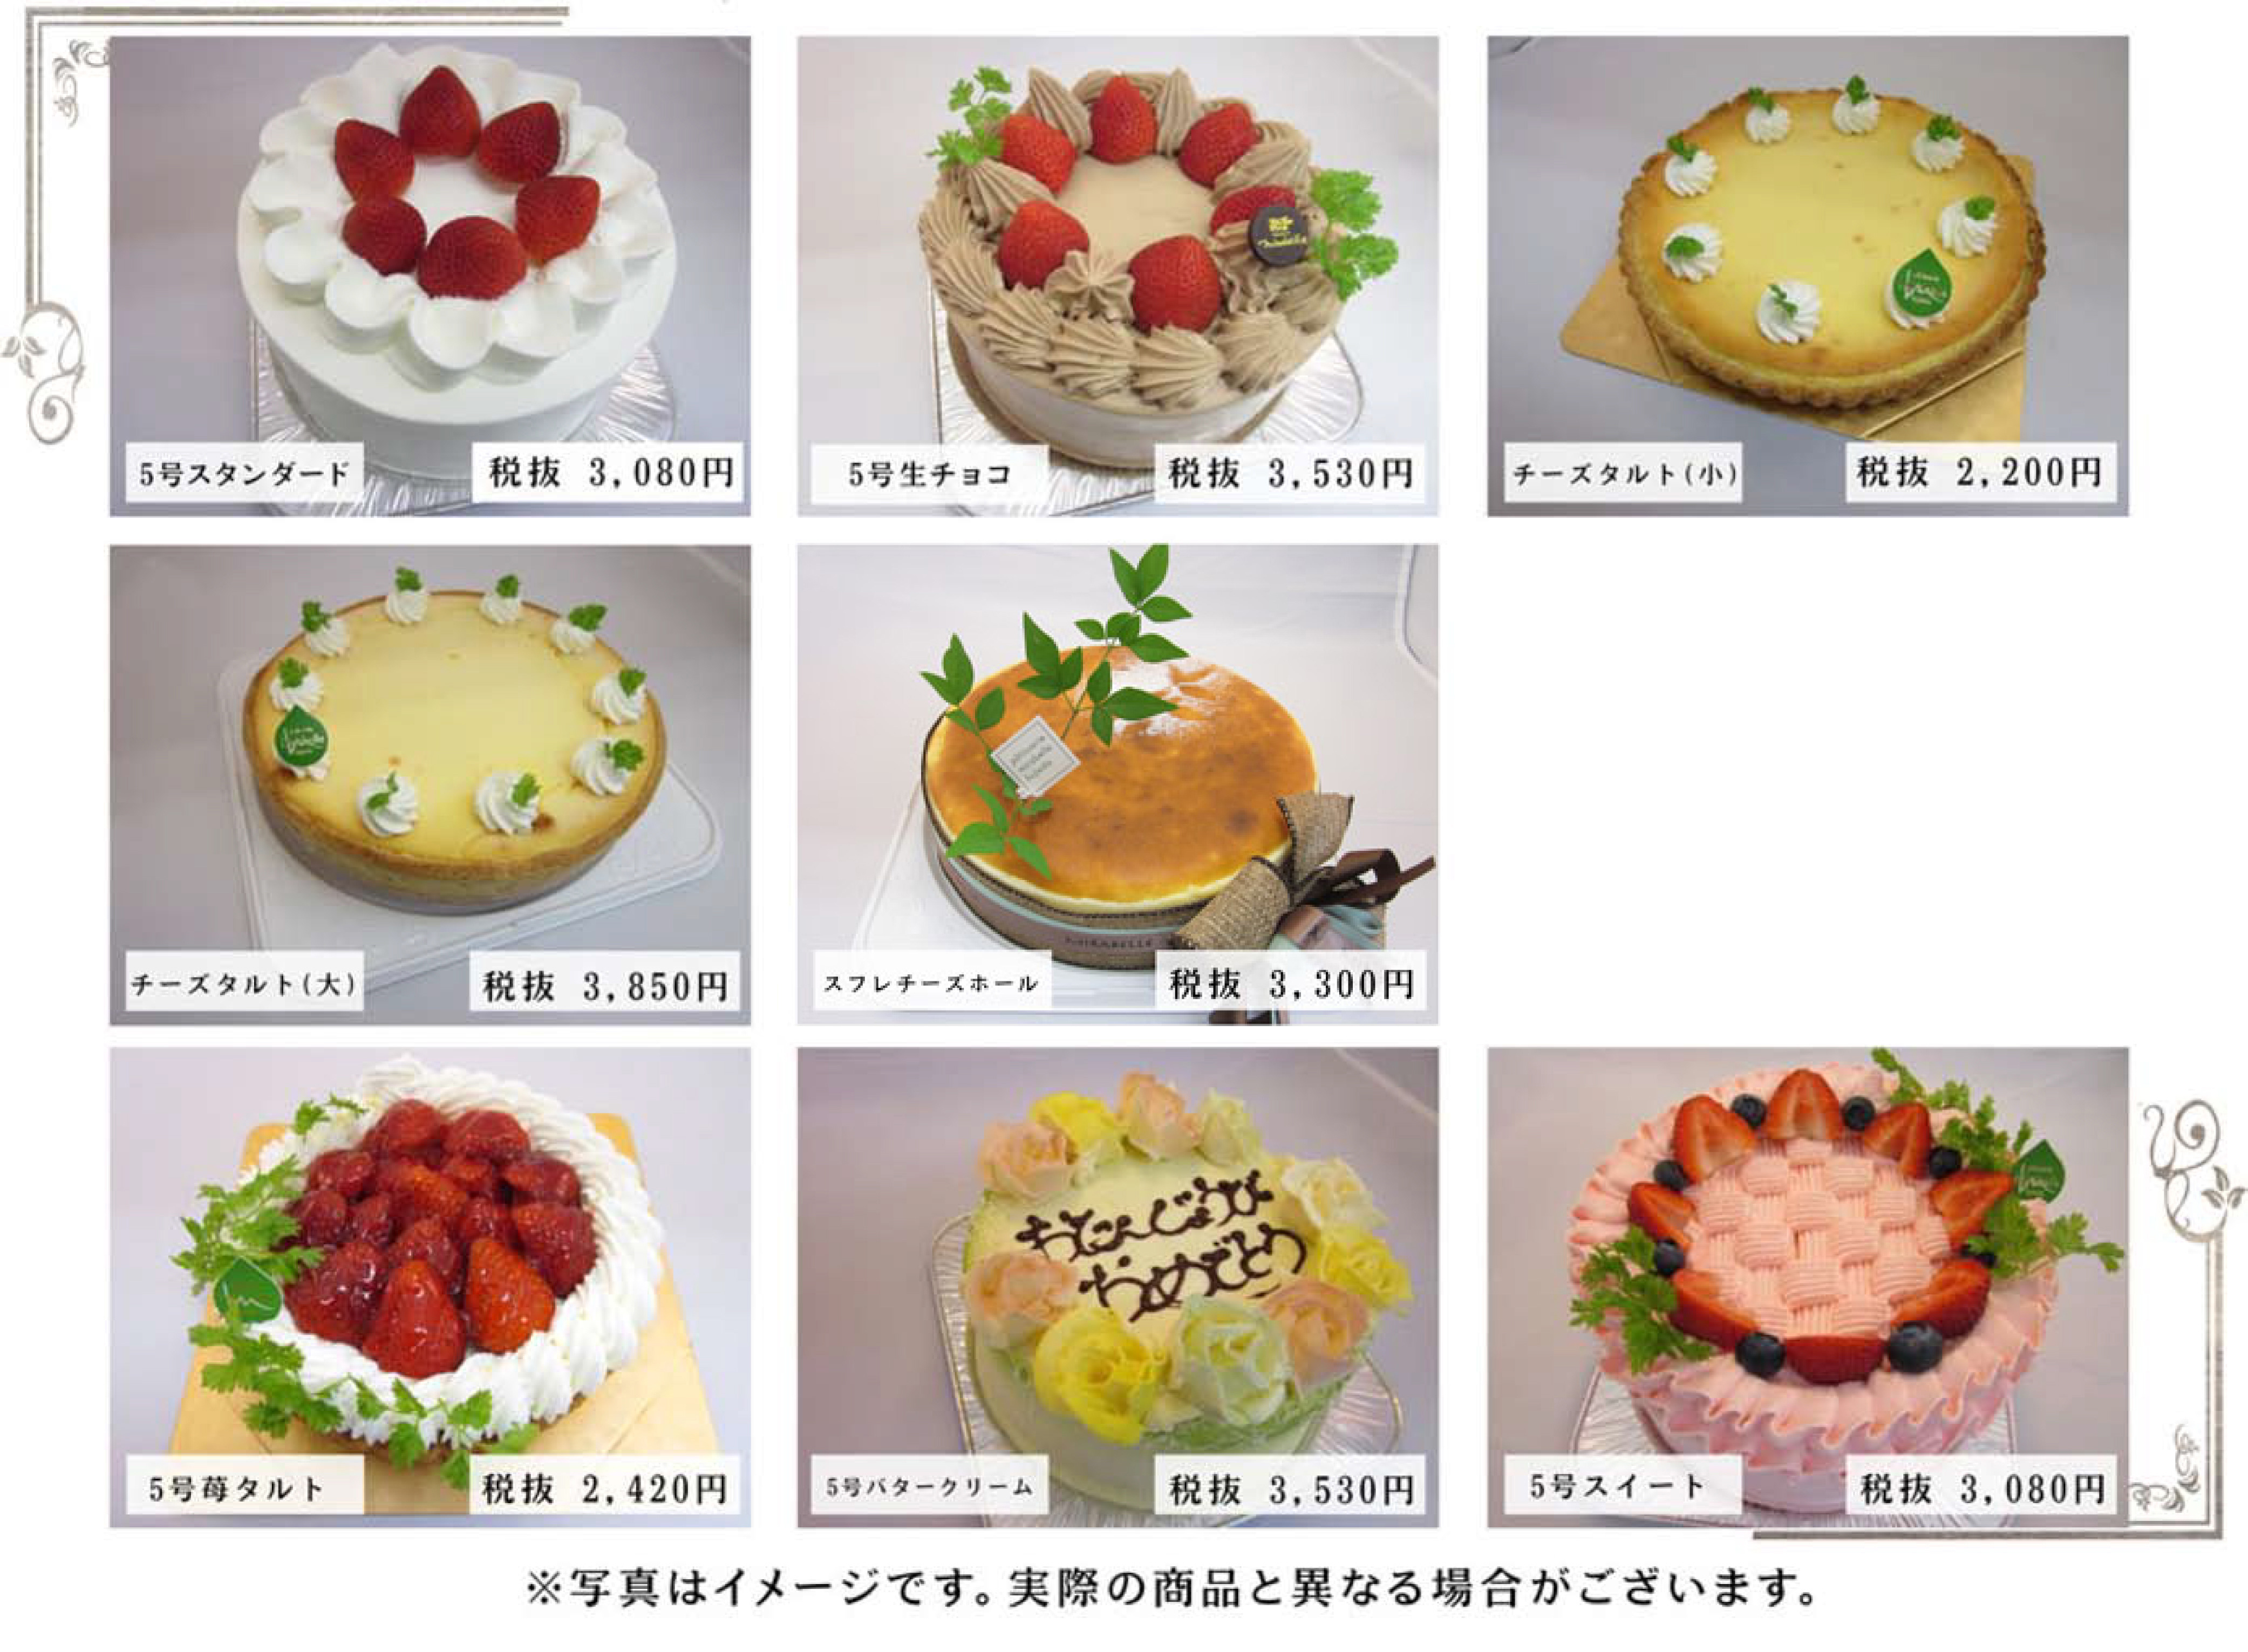 静岡で買える人気店 有名店のバースデーケーキおすすめ15選 Vokka ヴォッカ